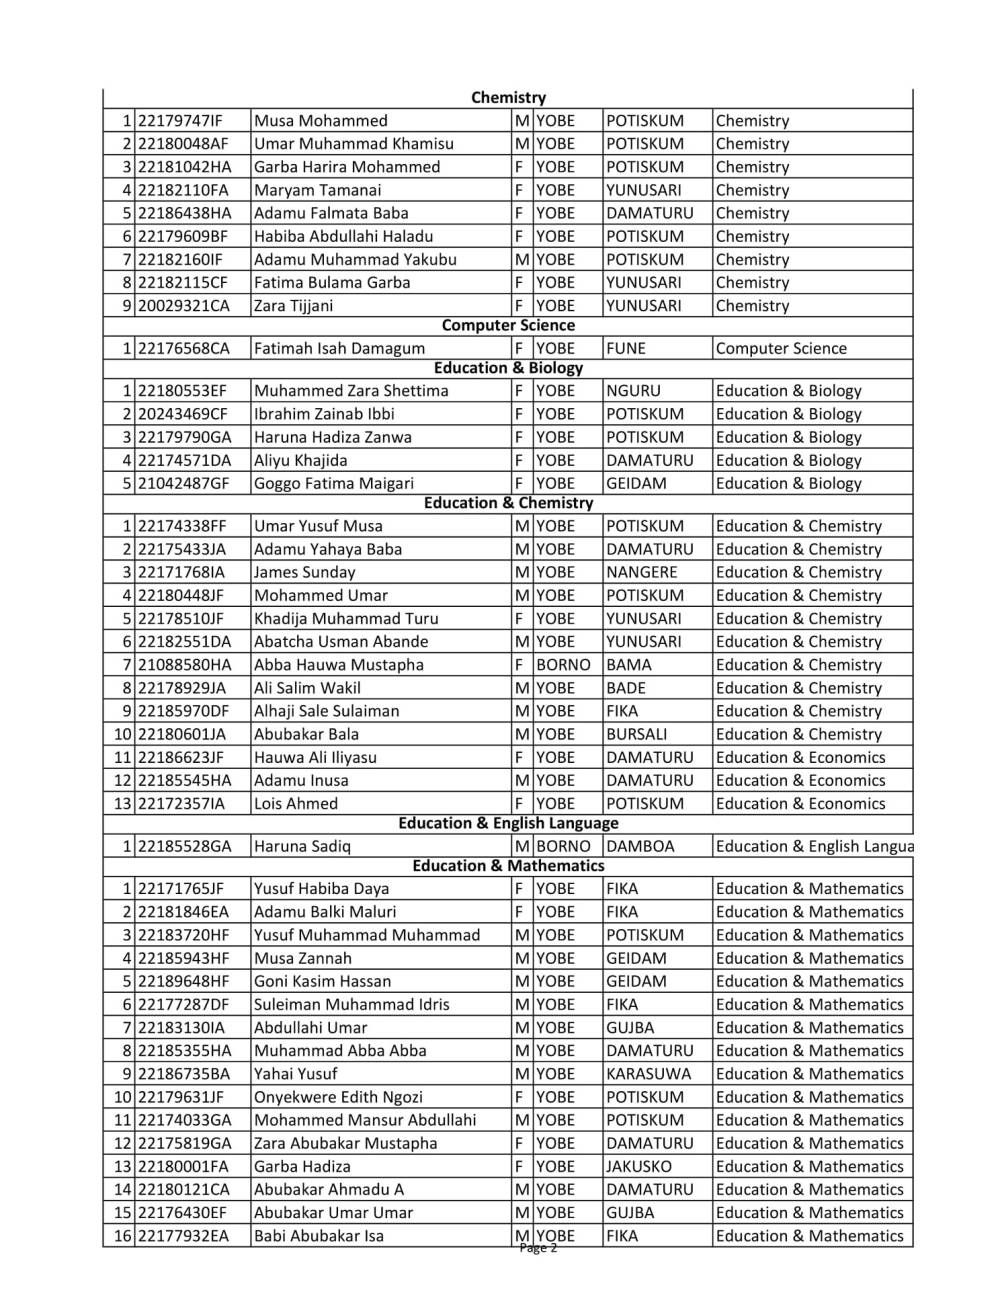 YSU 3rd Batch Admission List